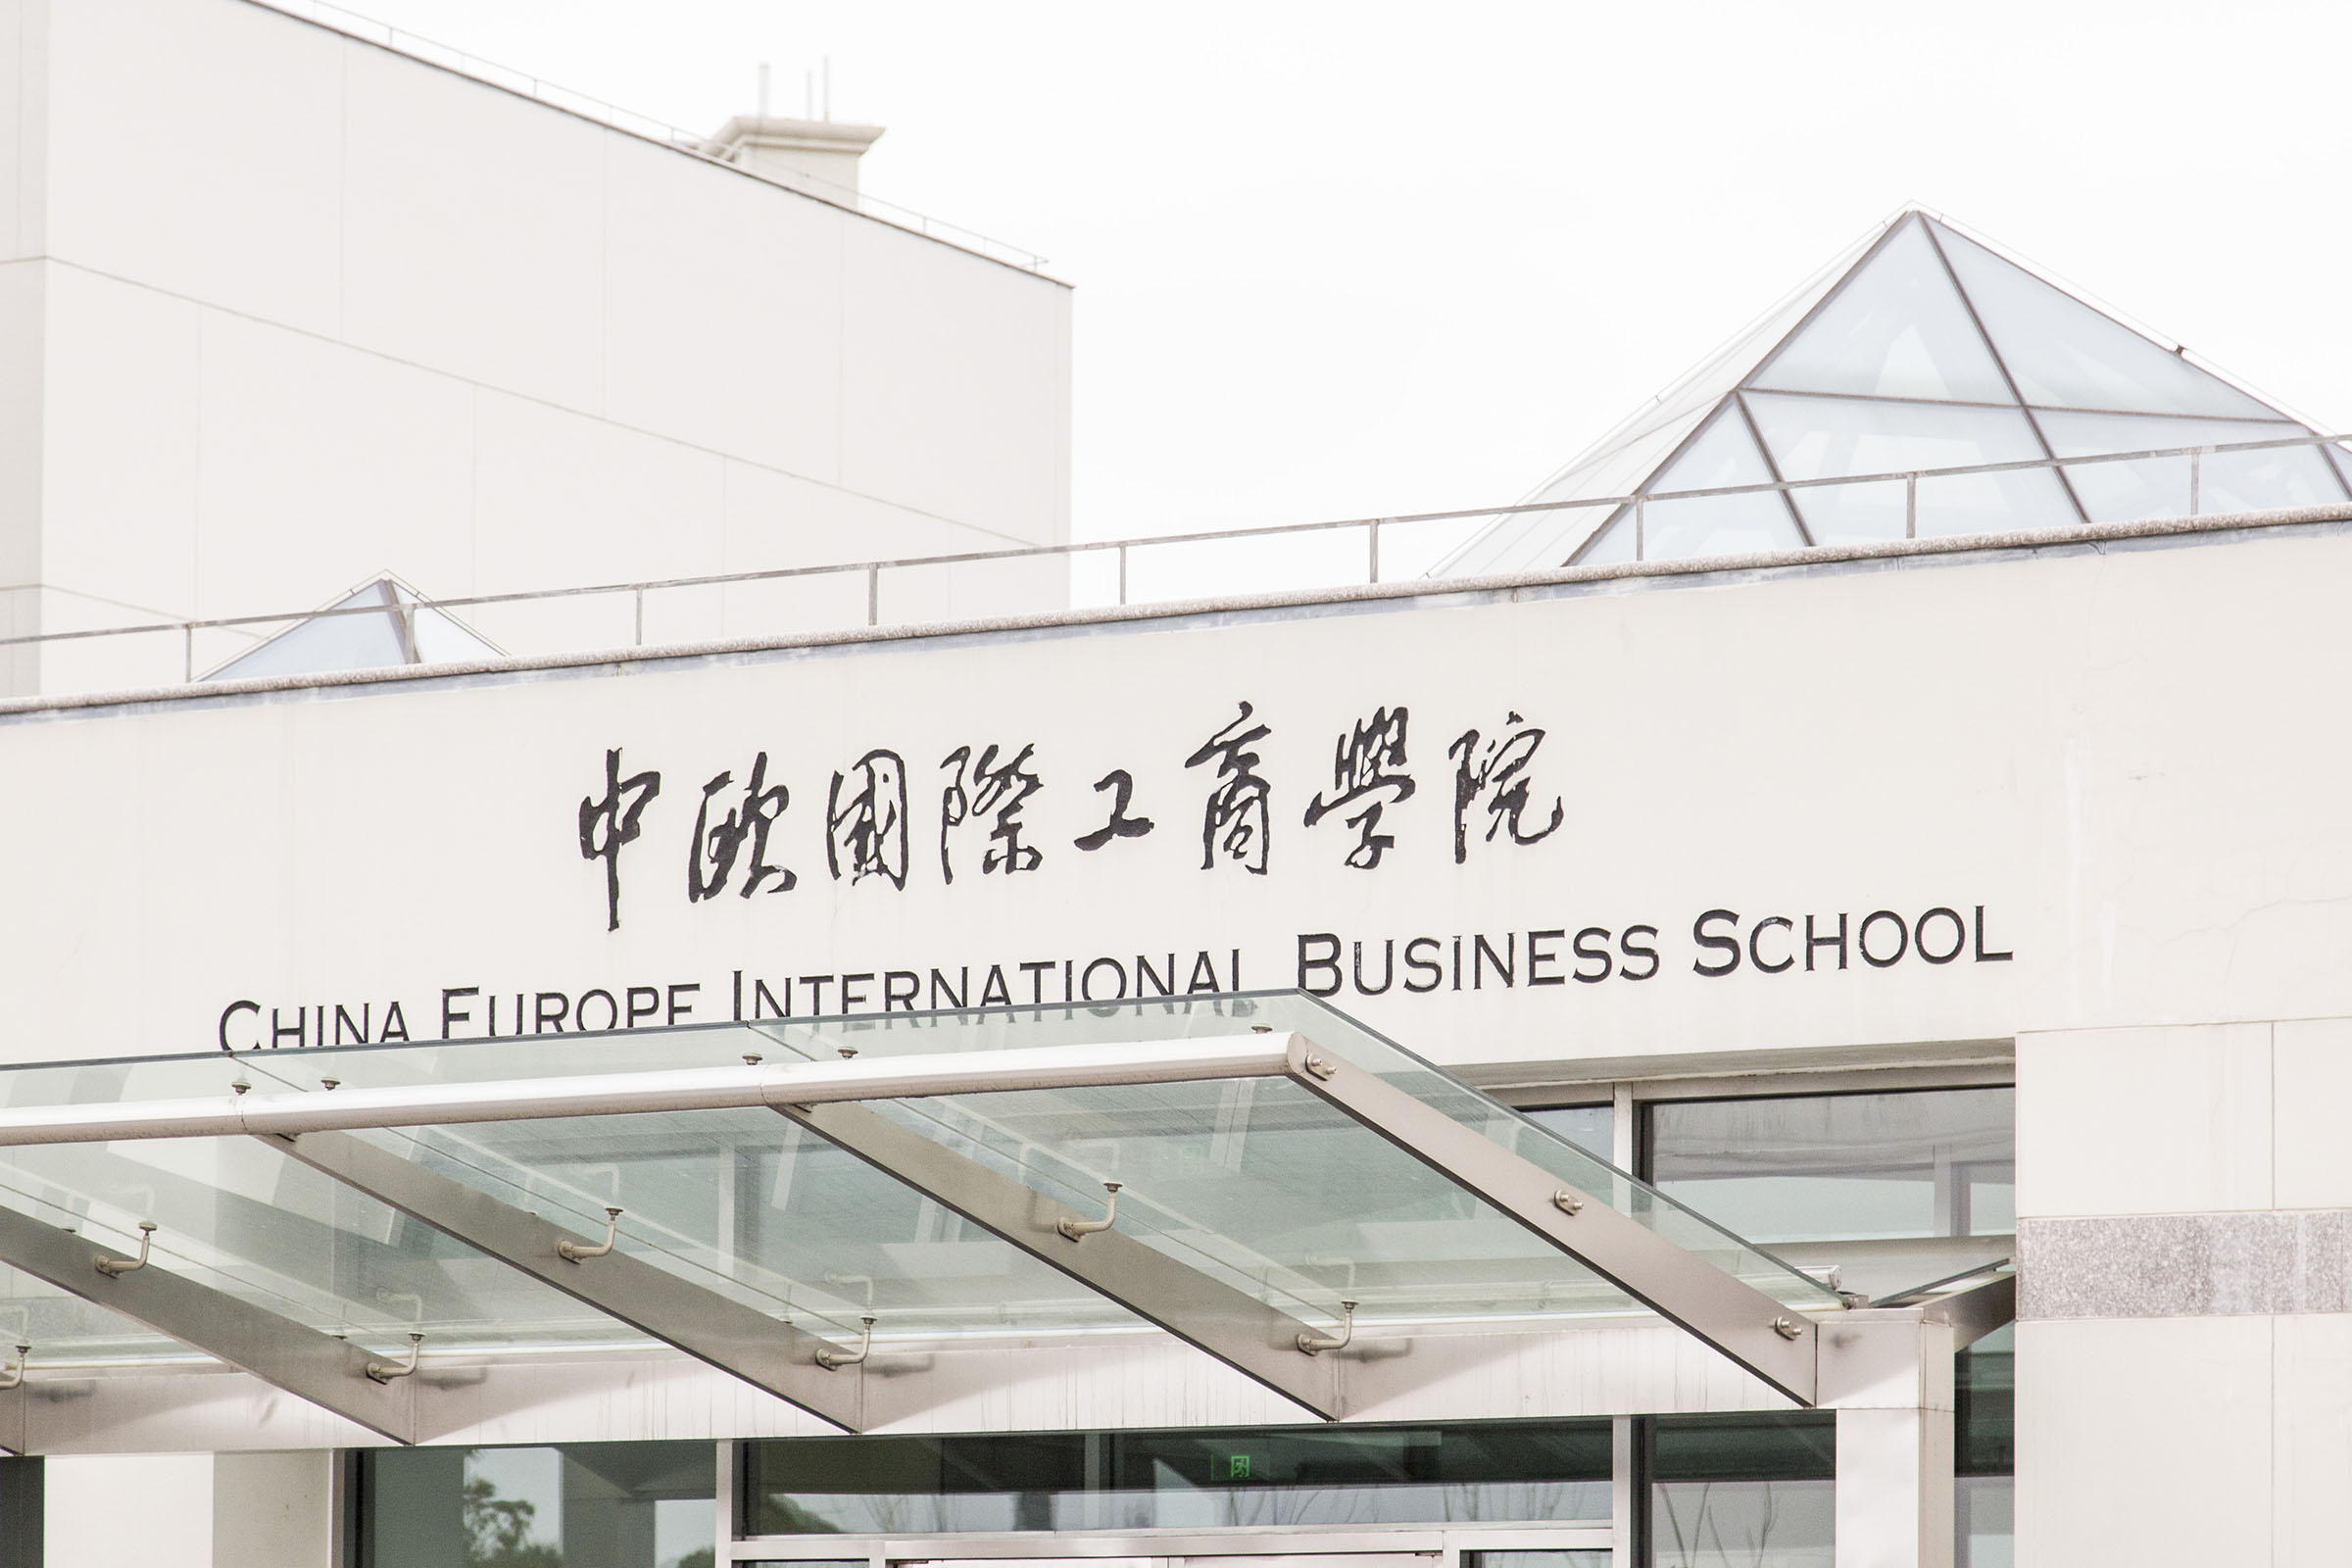 中欧国际工商管理学院